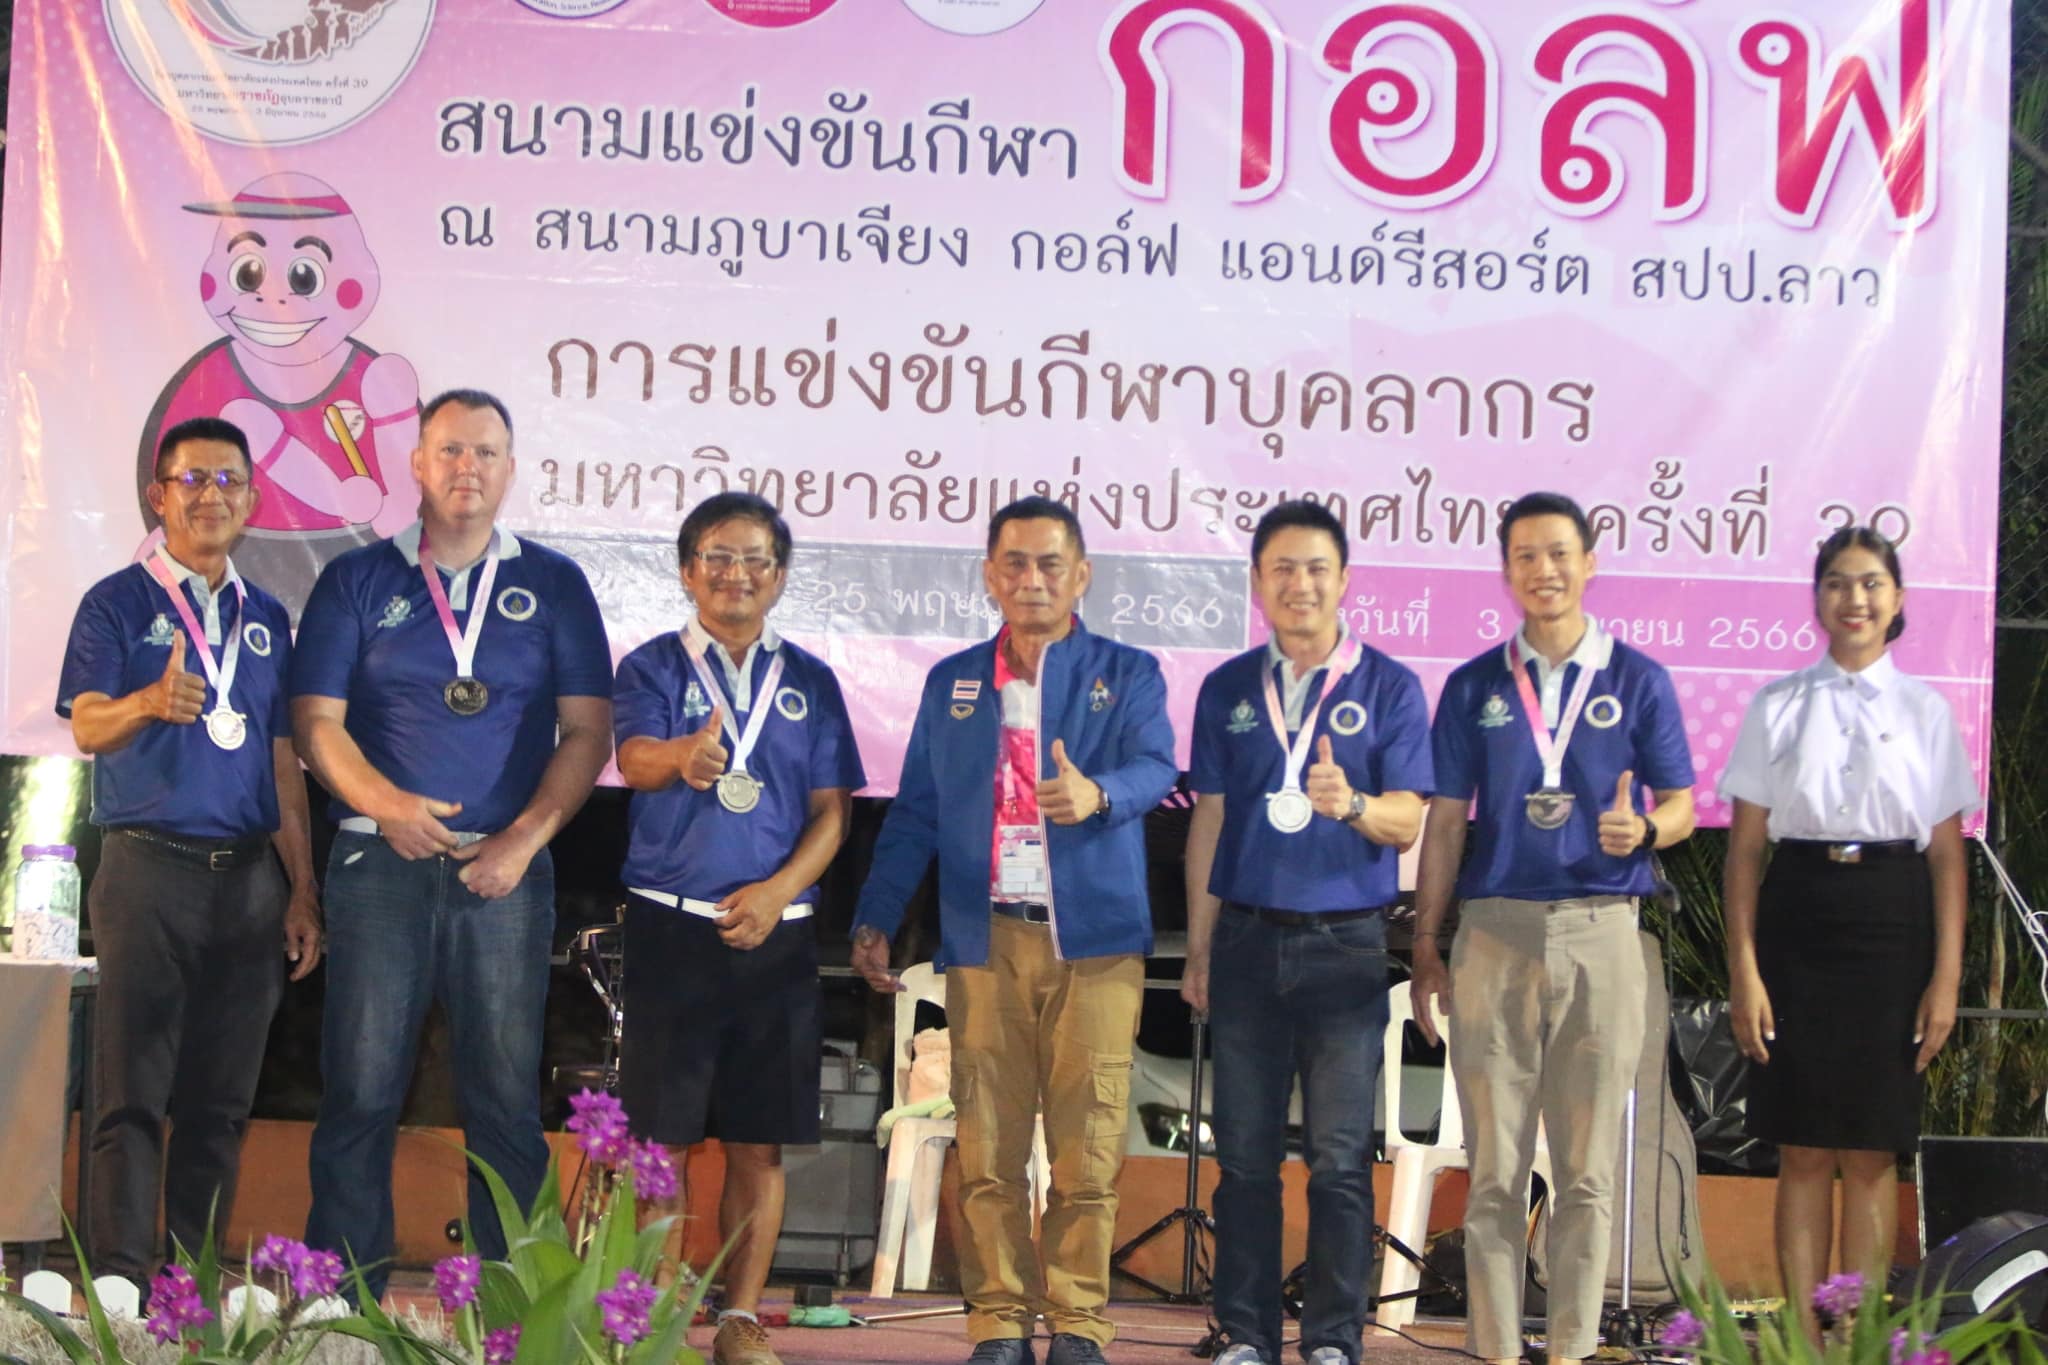 วันที่ 31 พ.ค. 66 พิธีมอบเหรียญรางวัล นักกีฬากอล์ฟ การแข่งขันกีฬาบุคลากรแห่งประเทศไทยครั้งที่ 39 